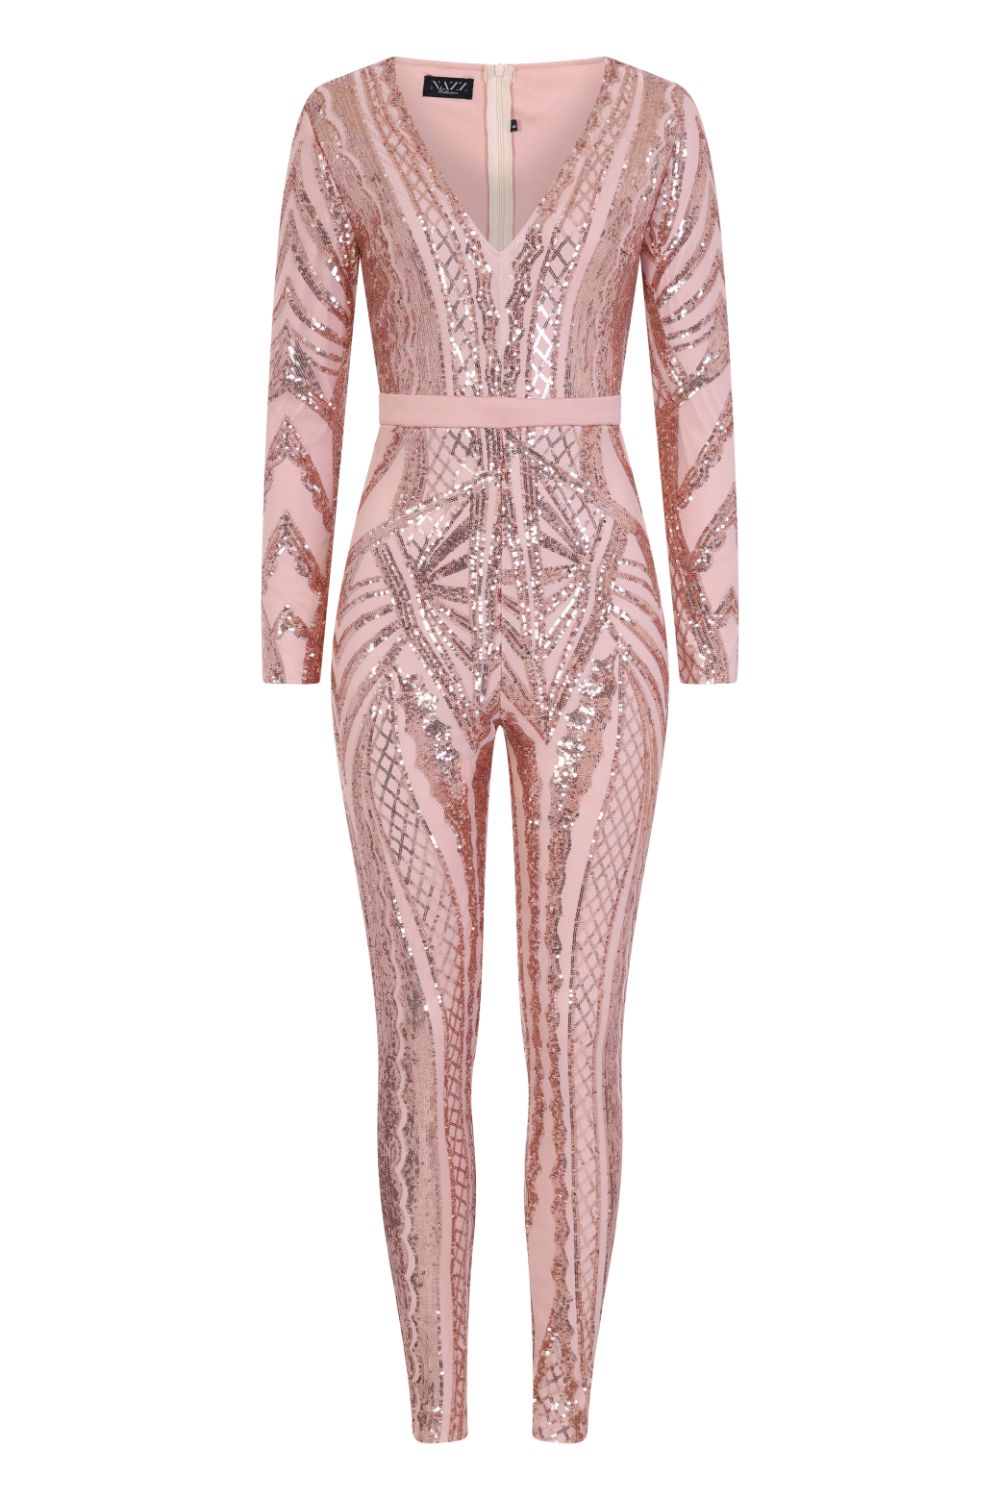 Tease Me Vip Rose Gold Nude Plunge Illusion Sequin Embellished Jumpsuit